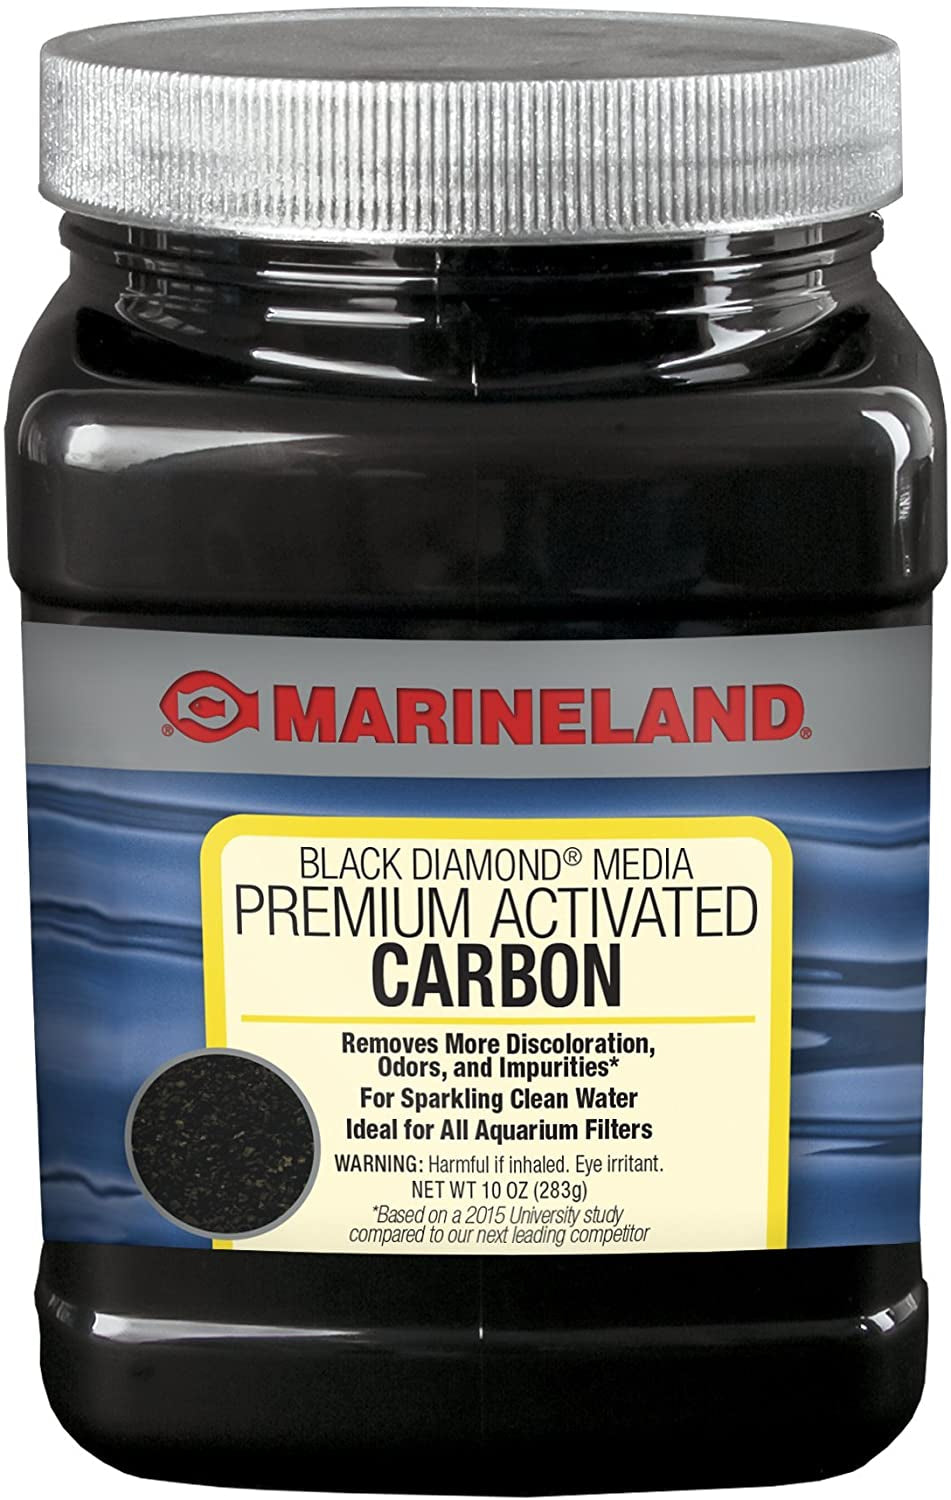 10 oz Marineland Black Diamond Media Premium Activated Carbon